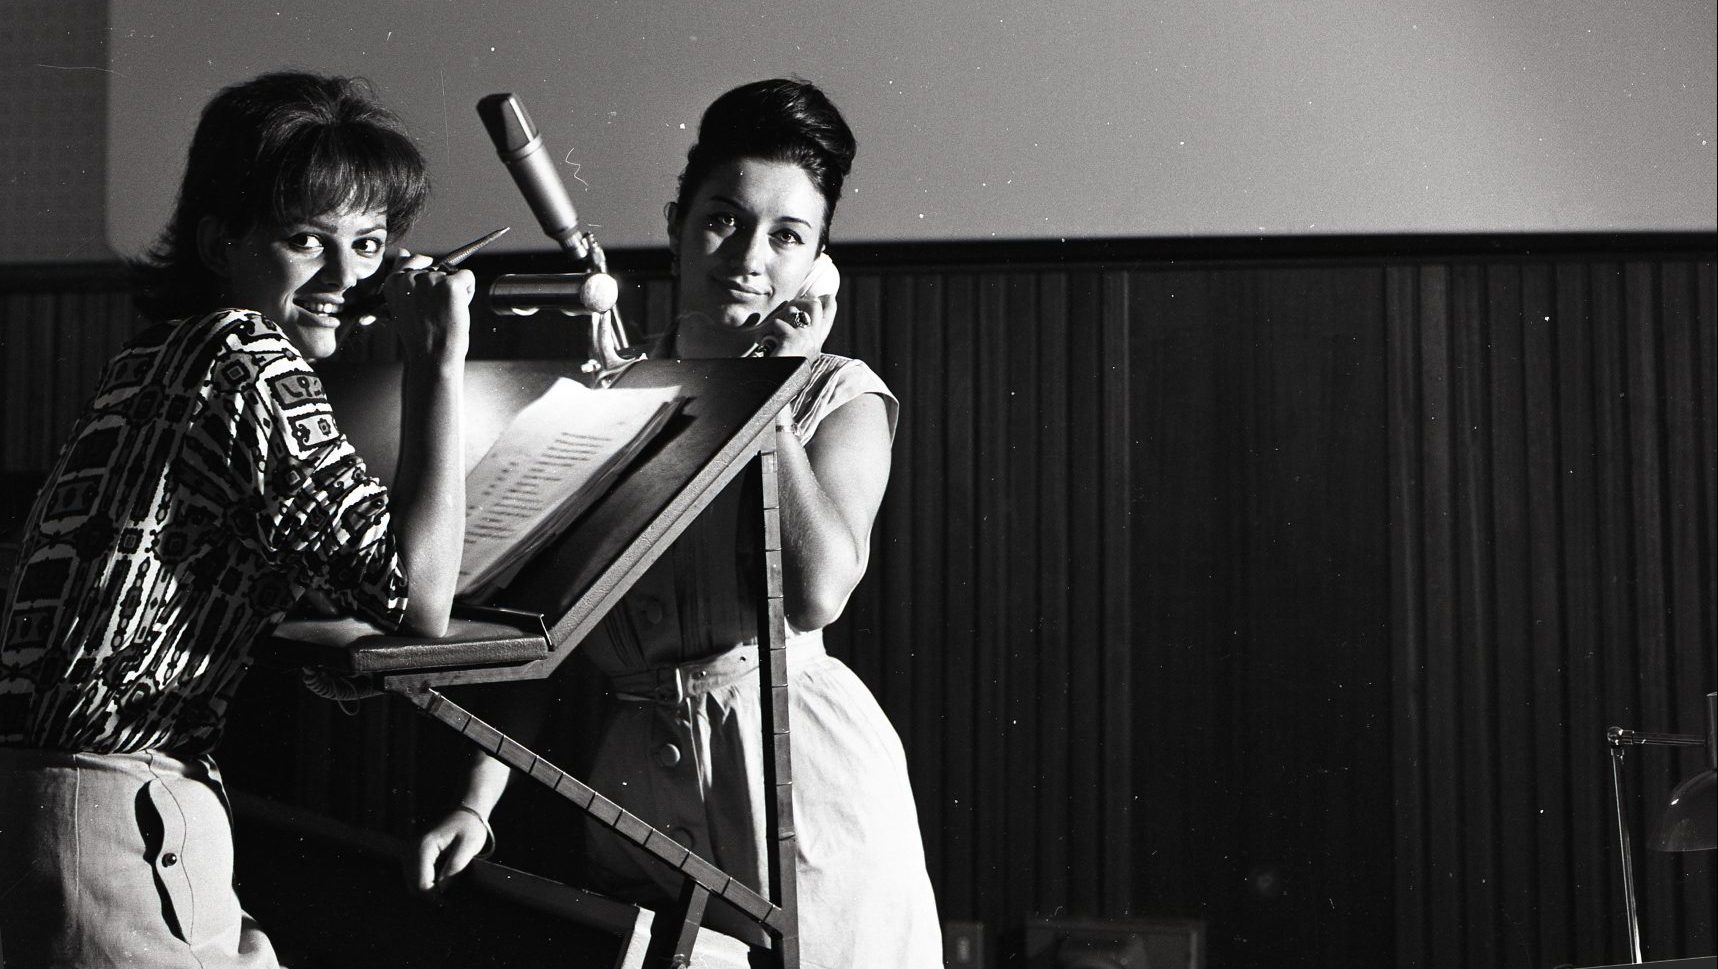 Italian actress Claudia 
Cardinale (left) in the dubbing room for the film Circus, 1964. Photo: Vittoriano Rastelli/Corbis